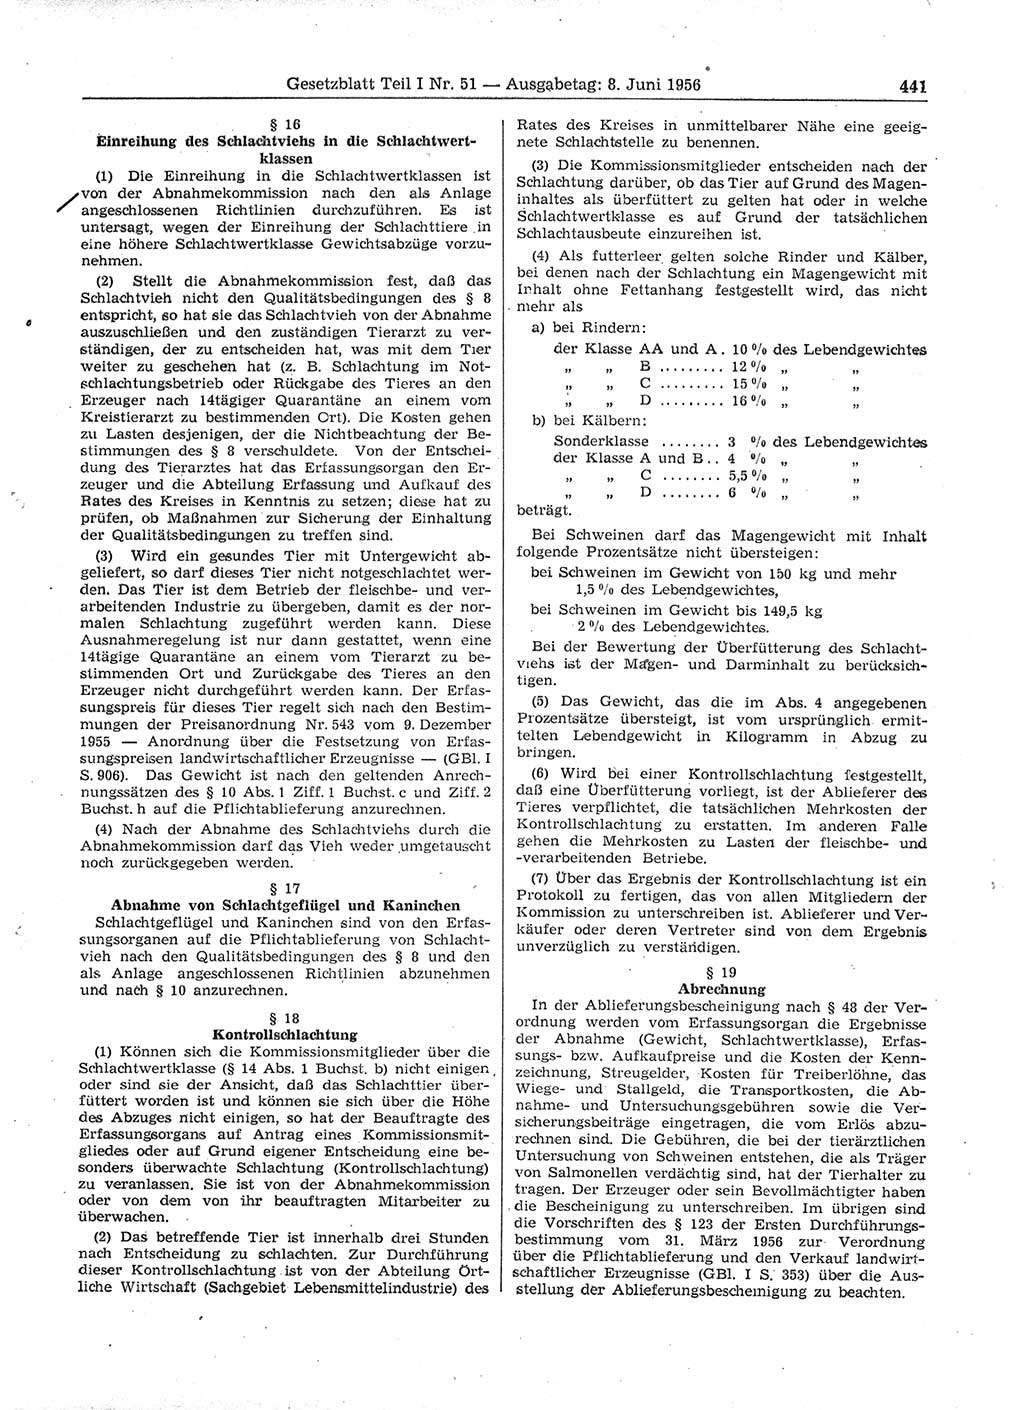 Gesetzblatt (GBl.) der Deutschen Demokratischen Republik (DDR) Teil Ⅰ 1956, Seite 441 (GBl. DDR Ⅰ 1956, S. 441)